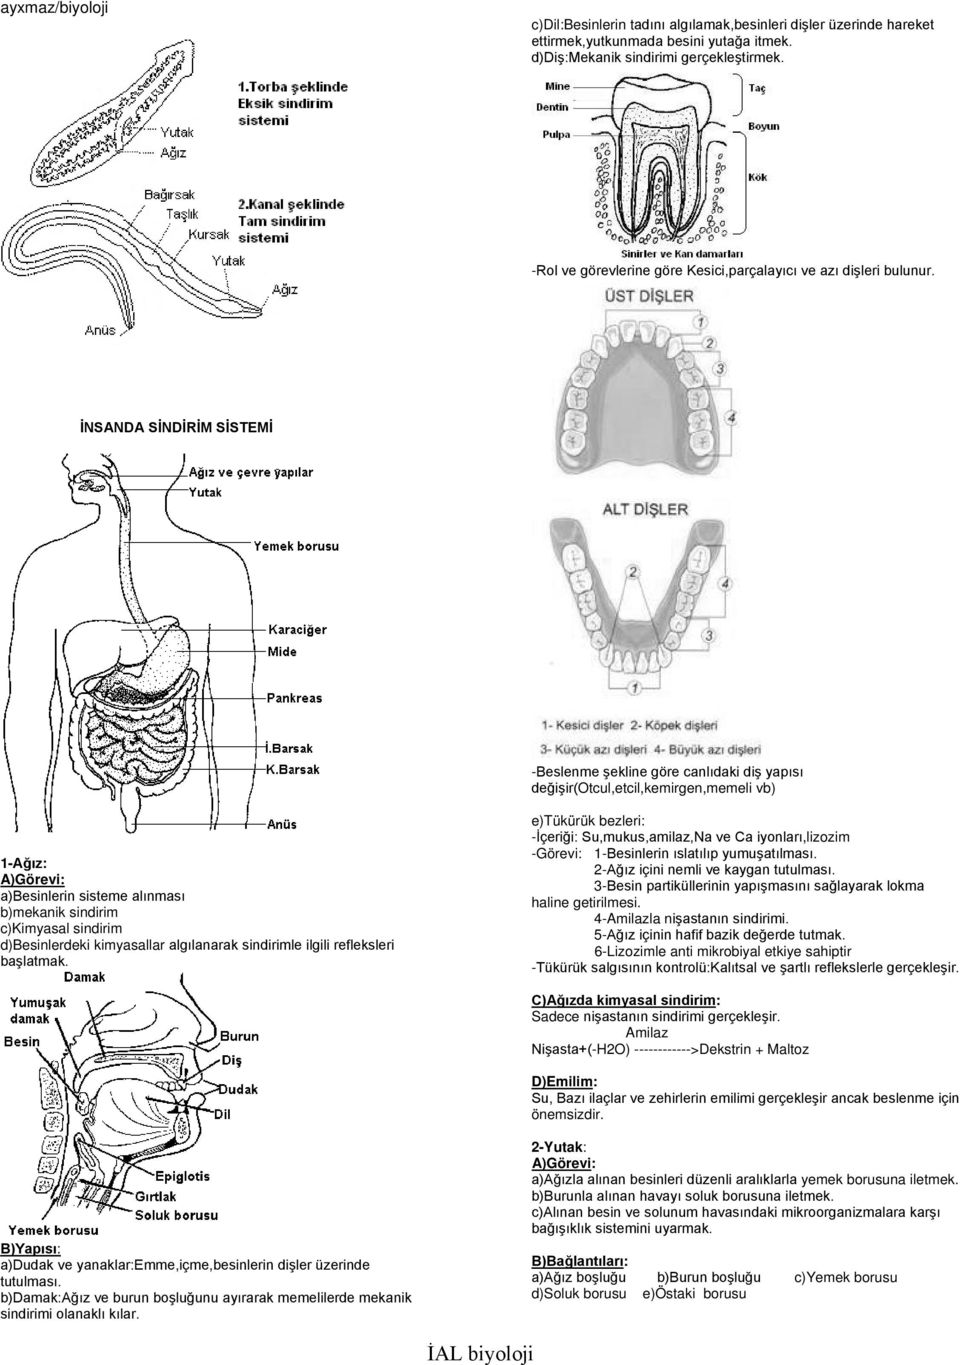 İNSANDA SİNDİRİM SİSTEMİ -Beslenme şekline göre canlıdaki diş yapısı değişir(otcul,etcil,kemirgen,memeli vb) 1-Ağız: a)besinlerin sisteme alınması b)mekanik sindirim c)kimyasal sindirim